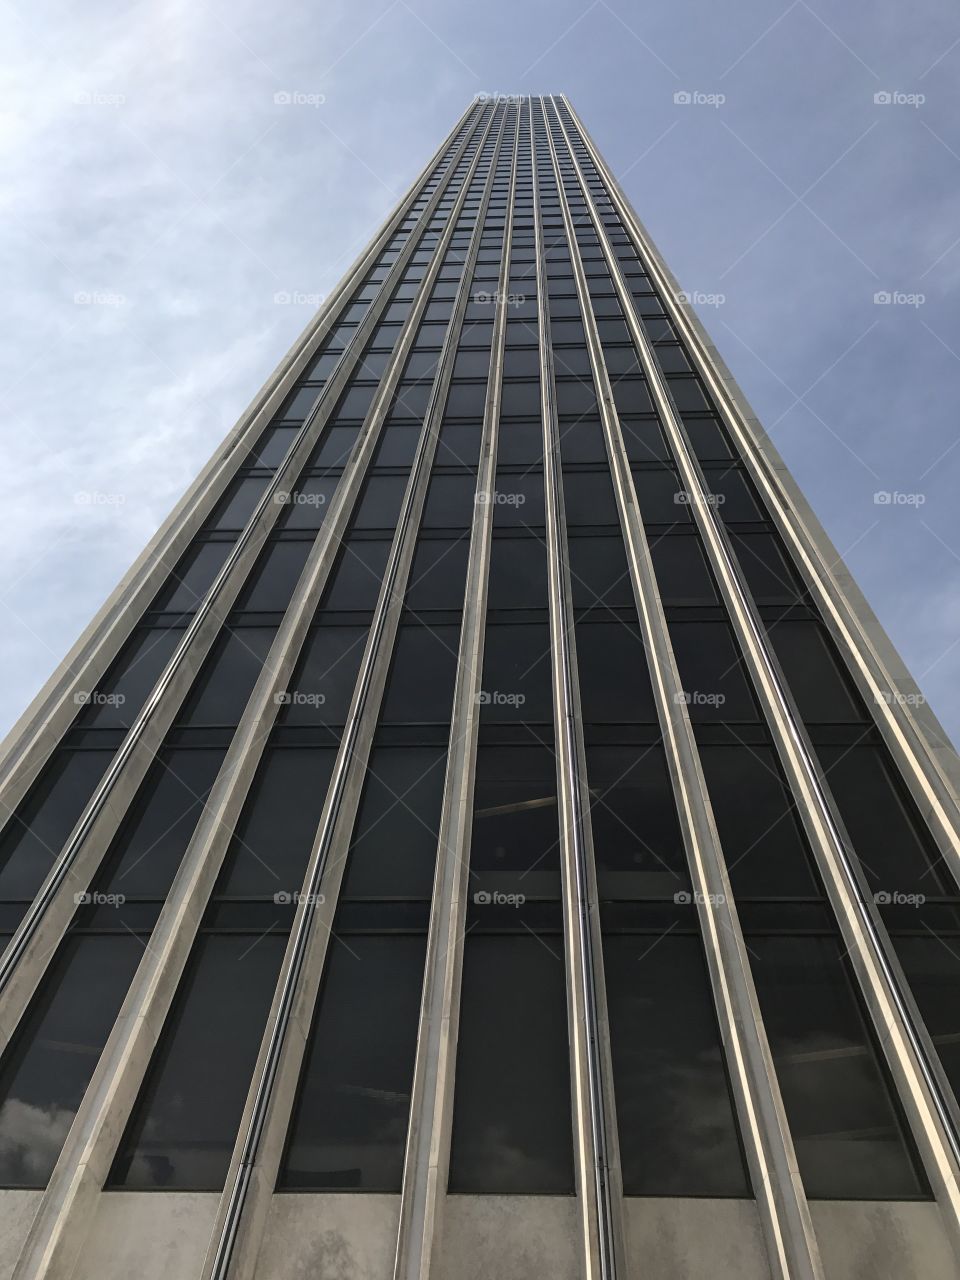 Mayor Erastus Corning Tower, on the Empire State plaza, Albany NY. 